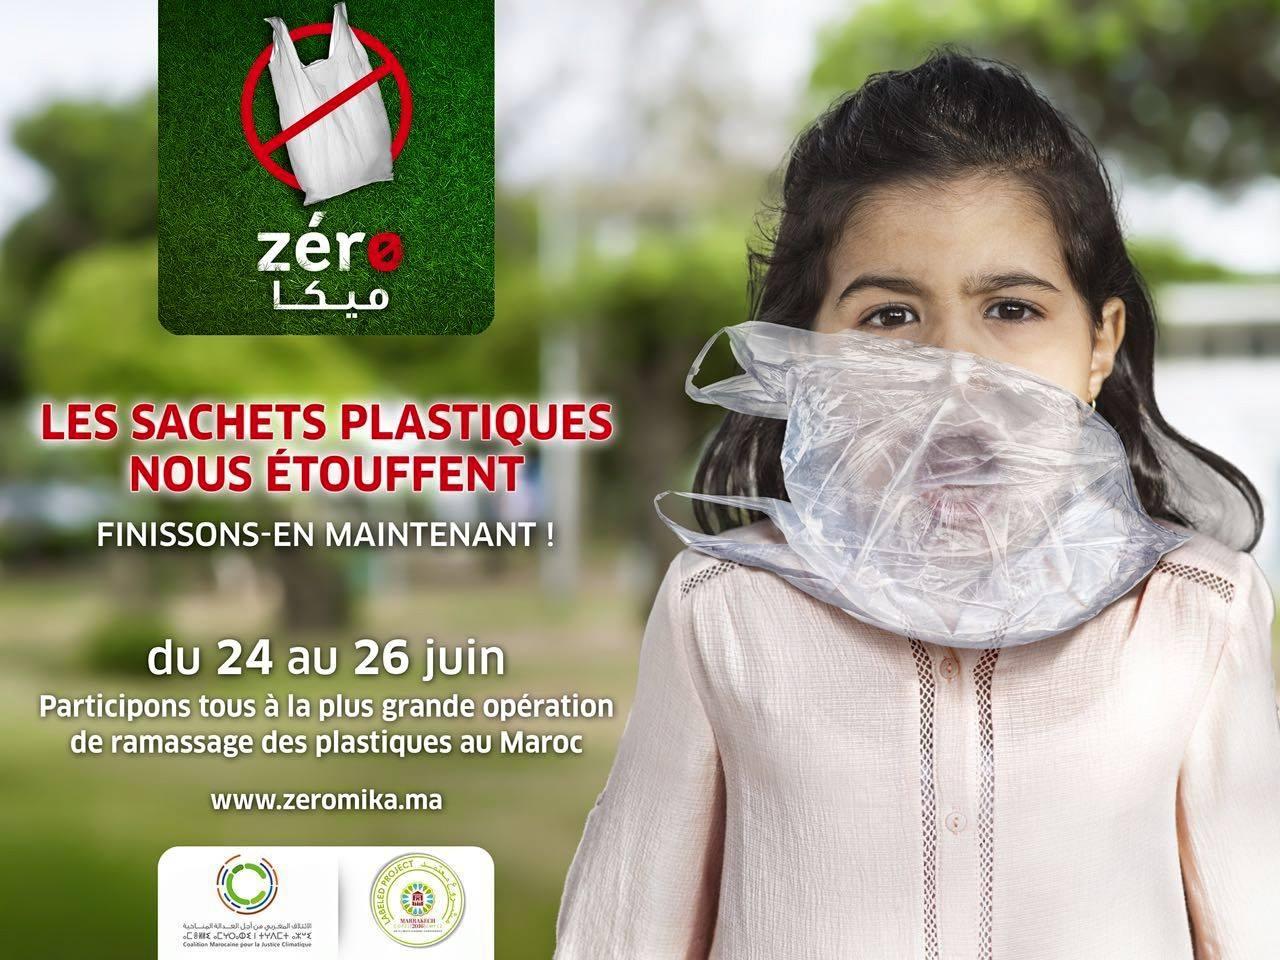 لوحة إعلانية لحملة زيرو ميكا لجمع الأكياس البلاستيكية، ترمز إلى أن هذه الأكياس "تخنق" الأجيال الصاعدة.